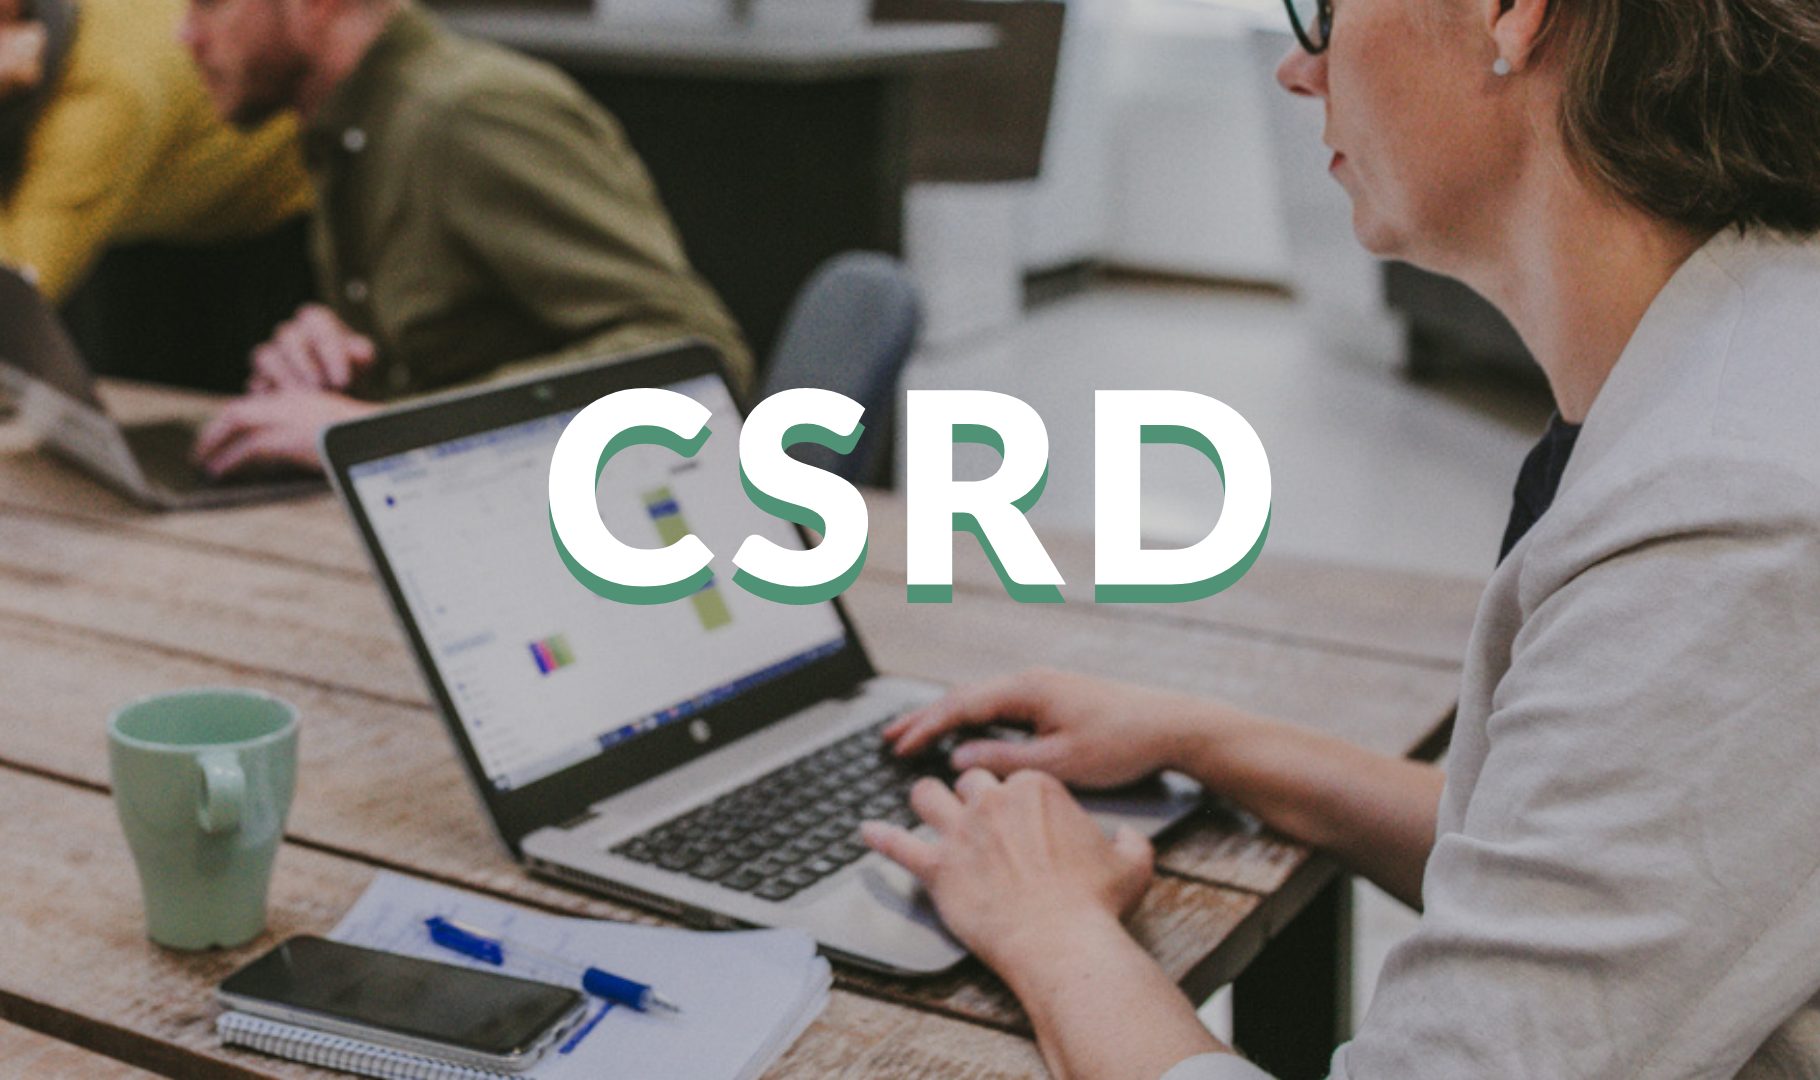 CSRD-raportointi tekee vastuullisuustyön näkyväksi – pk-yritys voi valjastaa sen kilpailukyvyksi